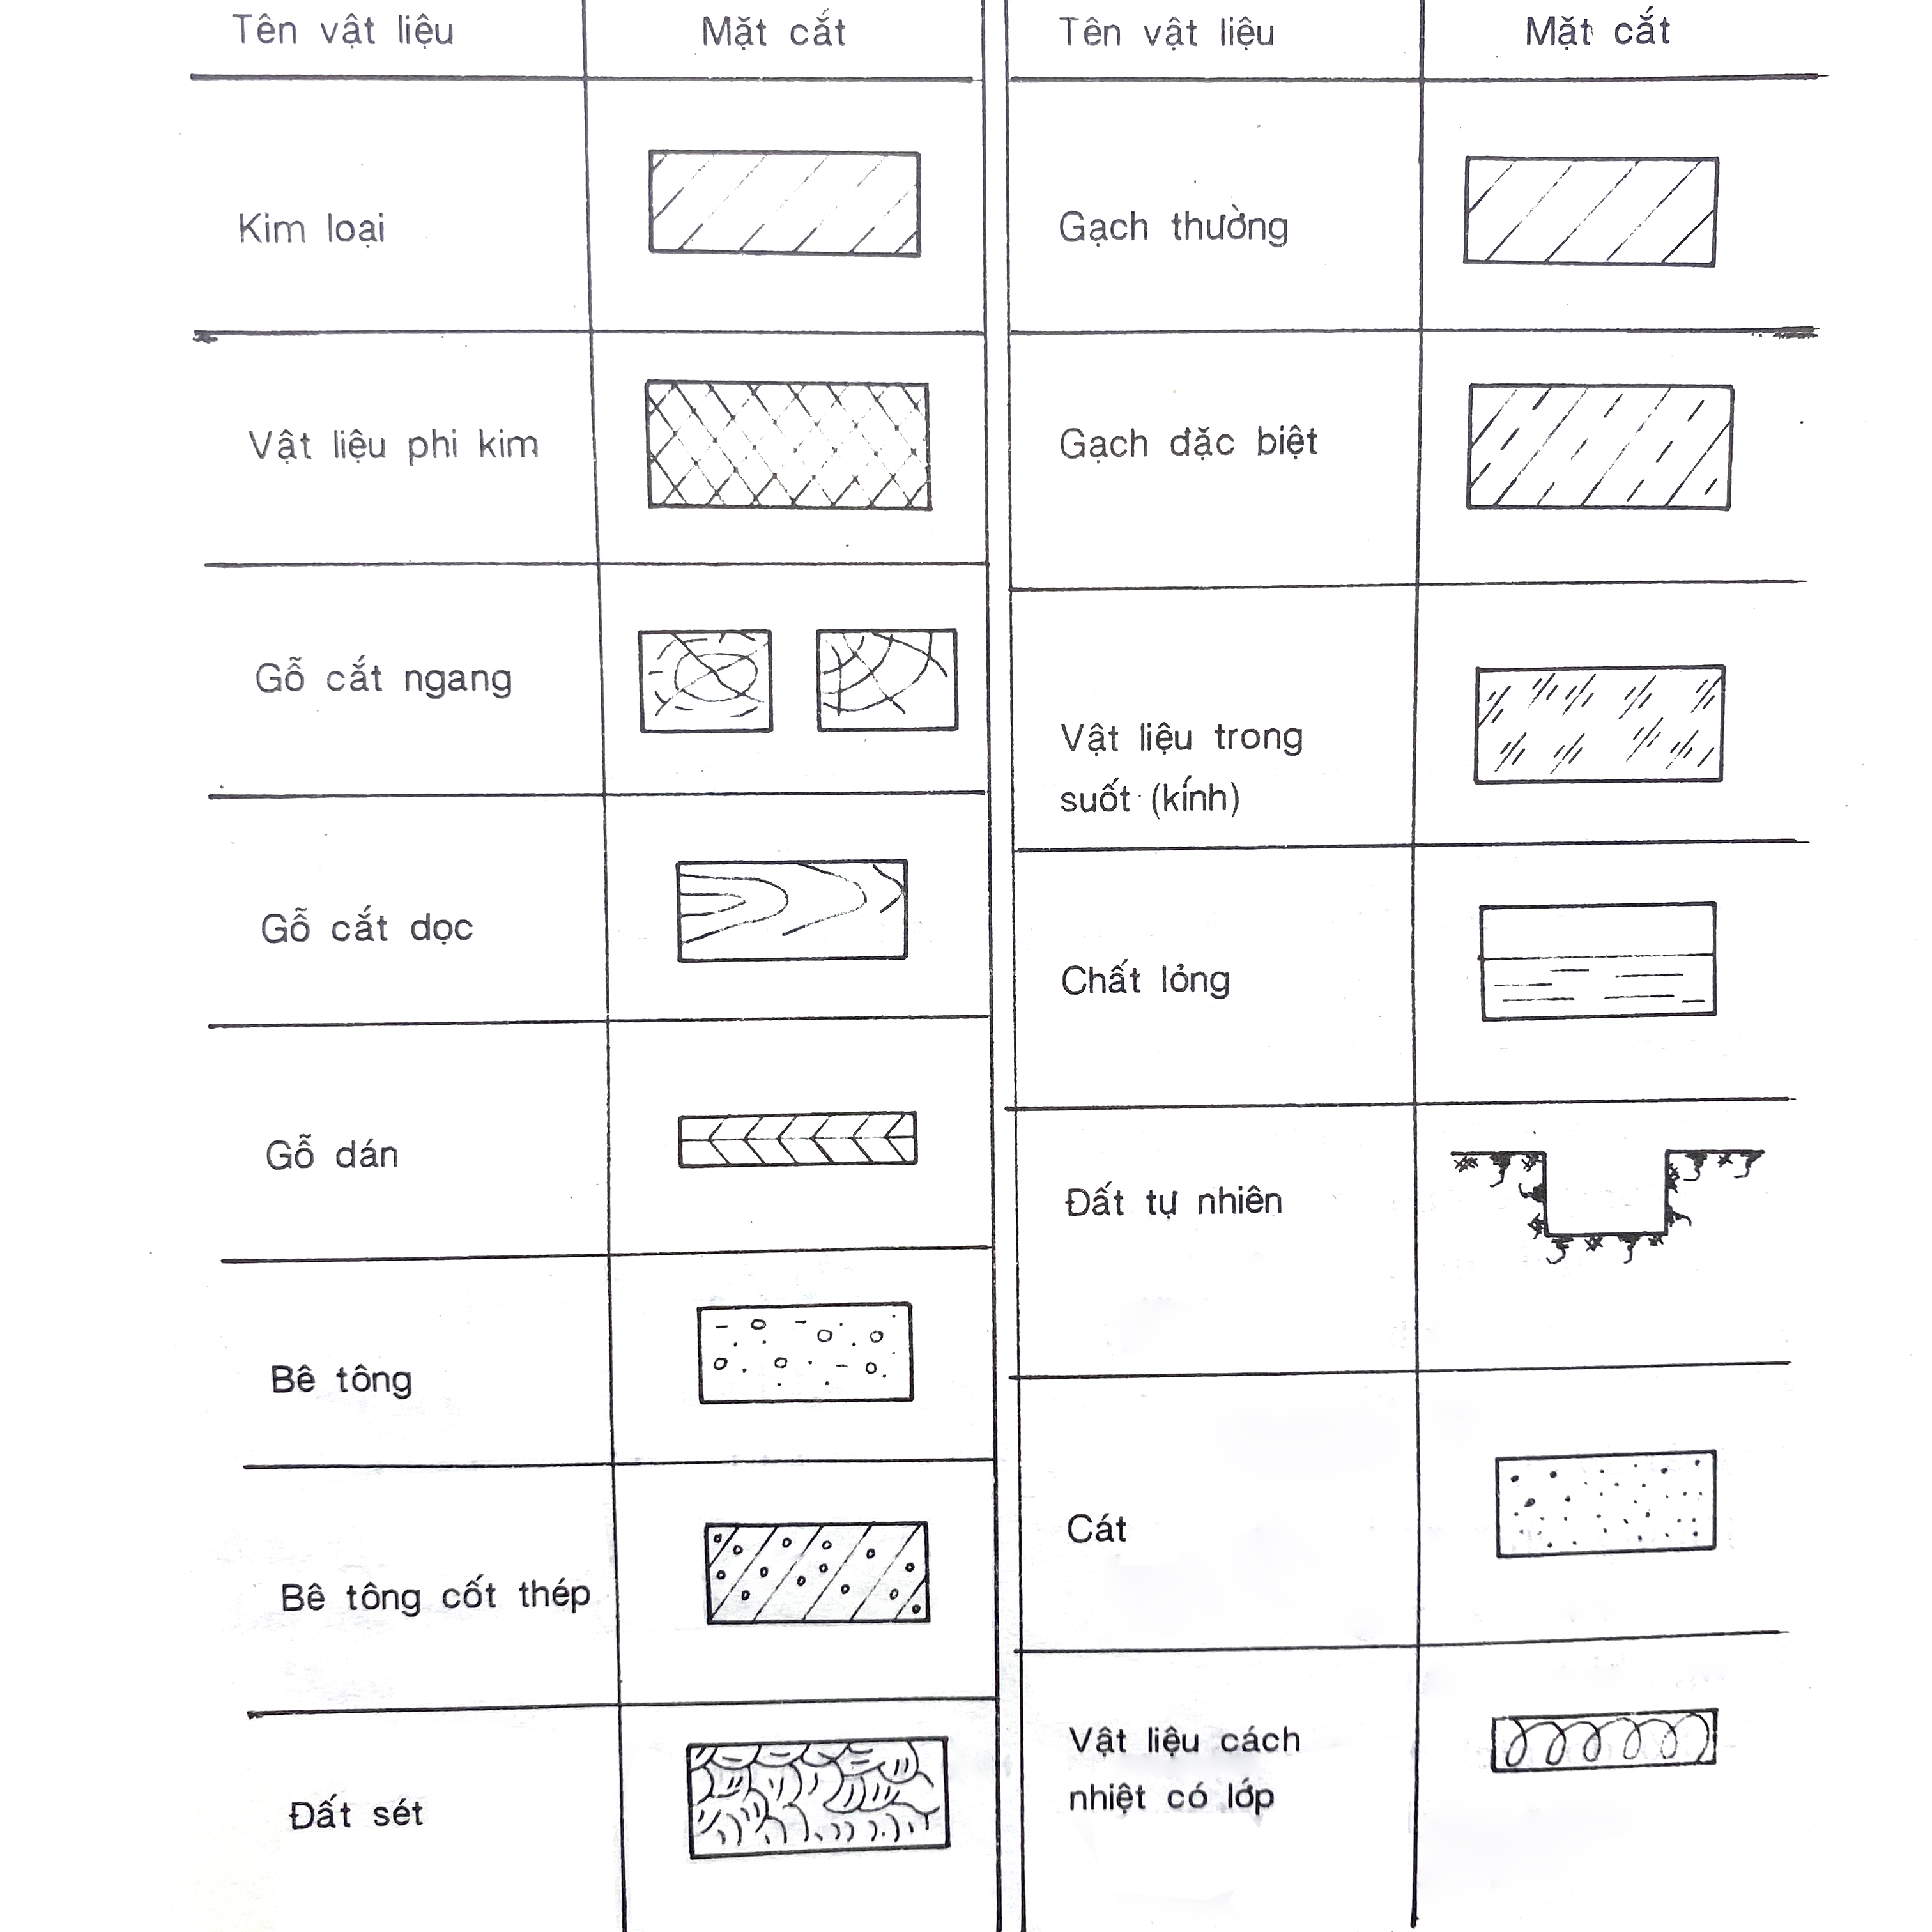 Định nghĩa và phân loại các ký hiệu bê tông cốt thép